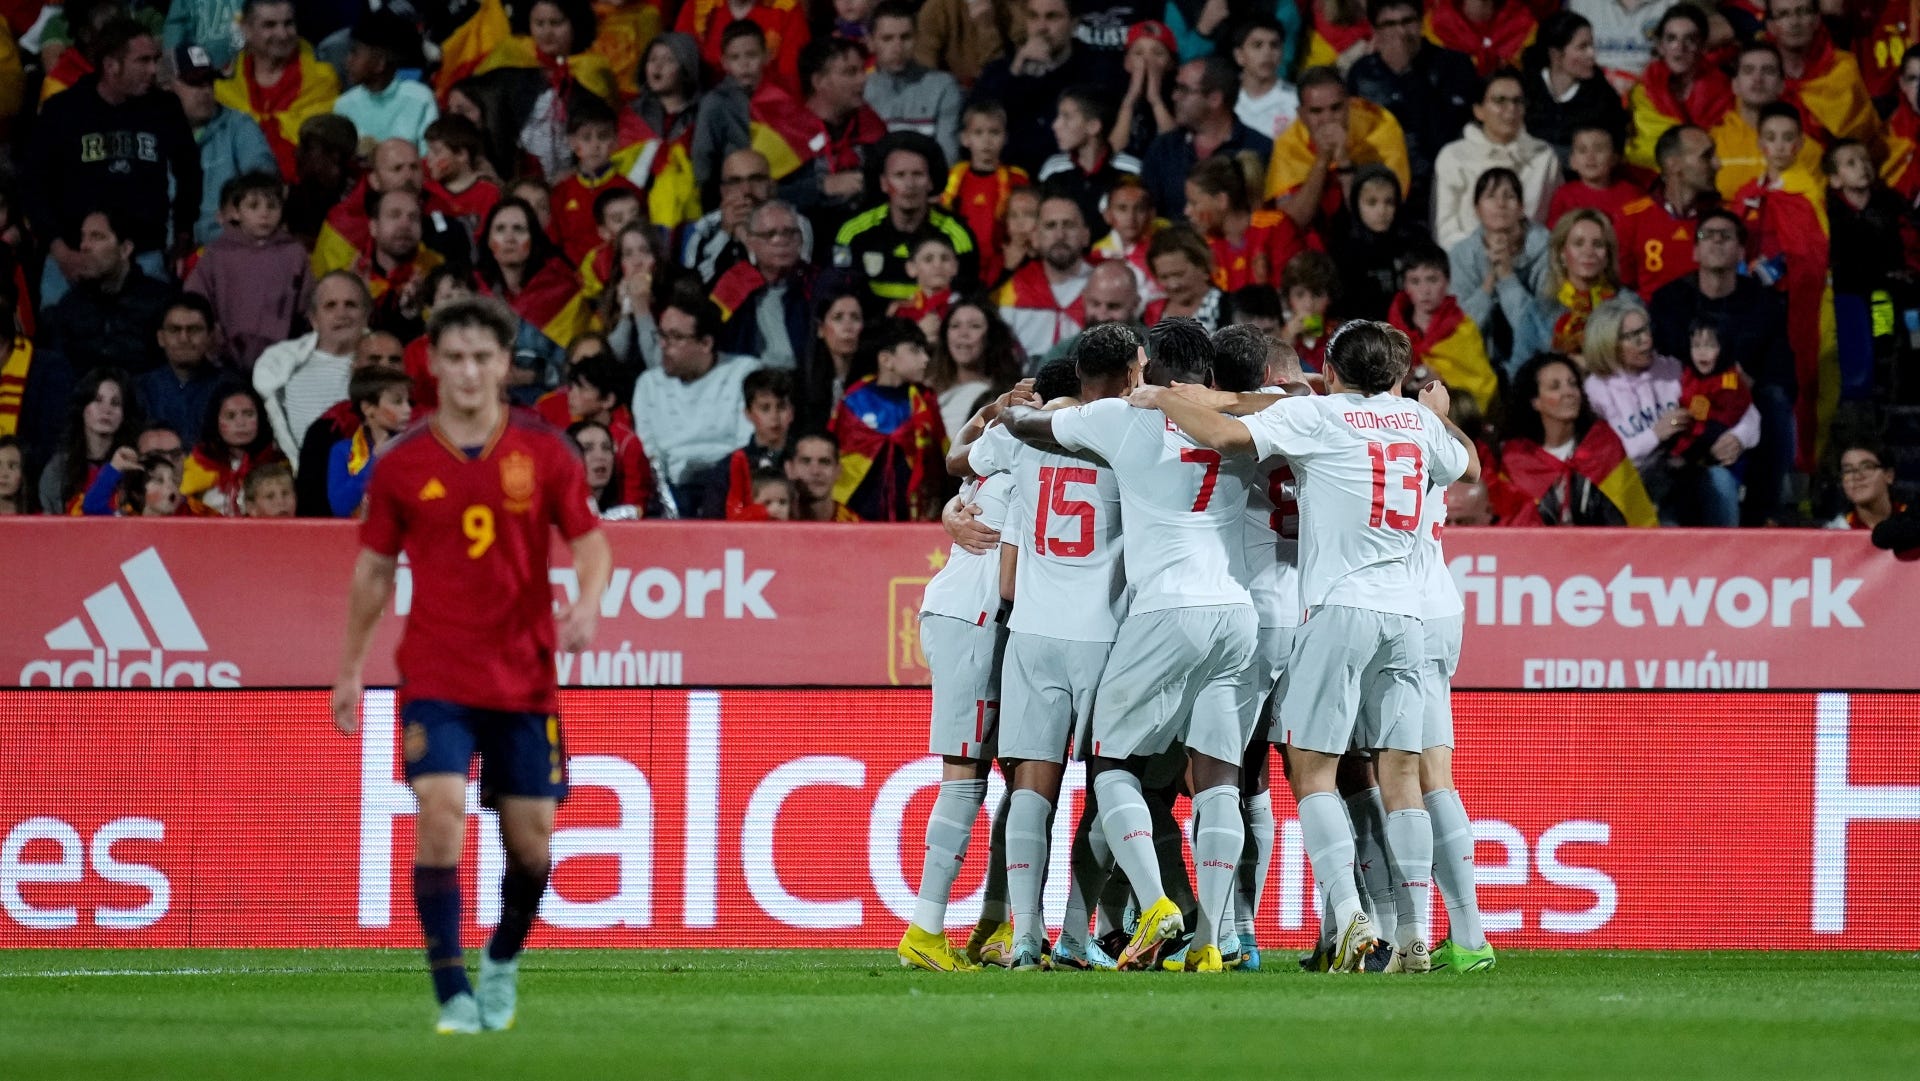 Liga das Nações, resultados da 5ª jornada – A façanha da Hungria na Alemanha, Espanha eliminada frente à Suíça